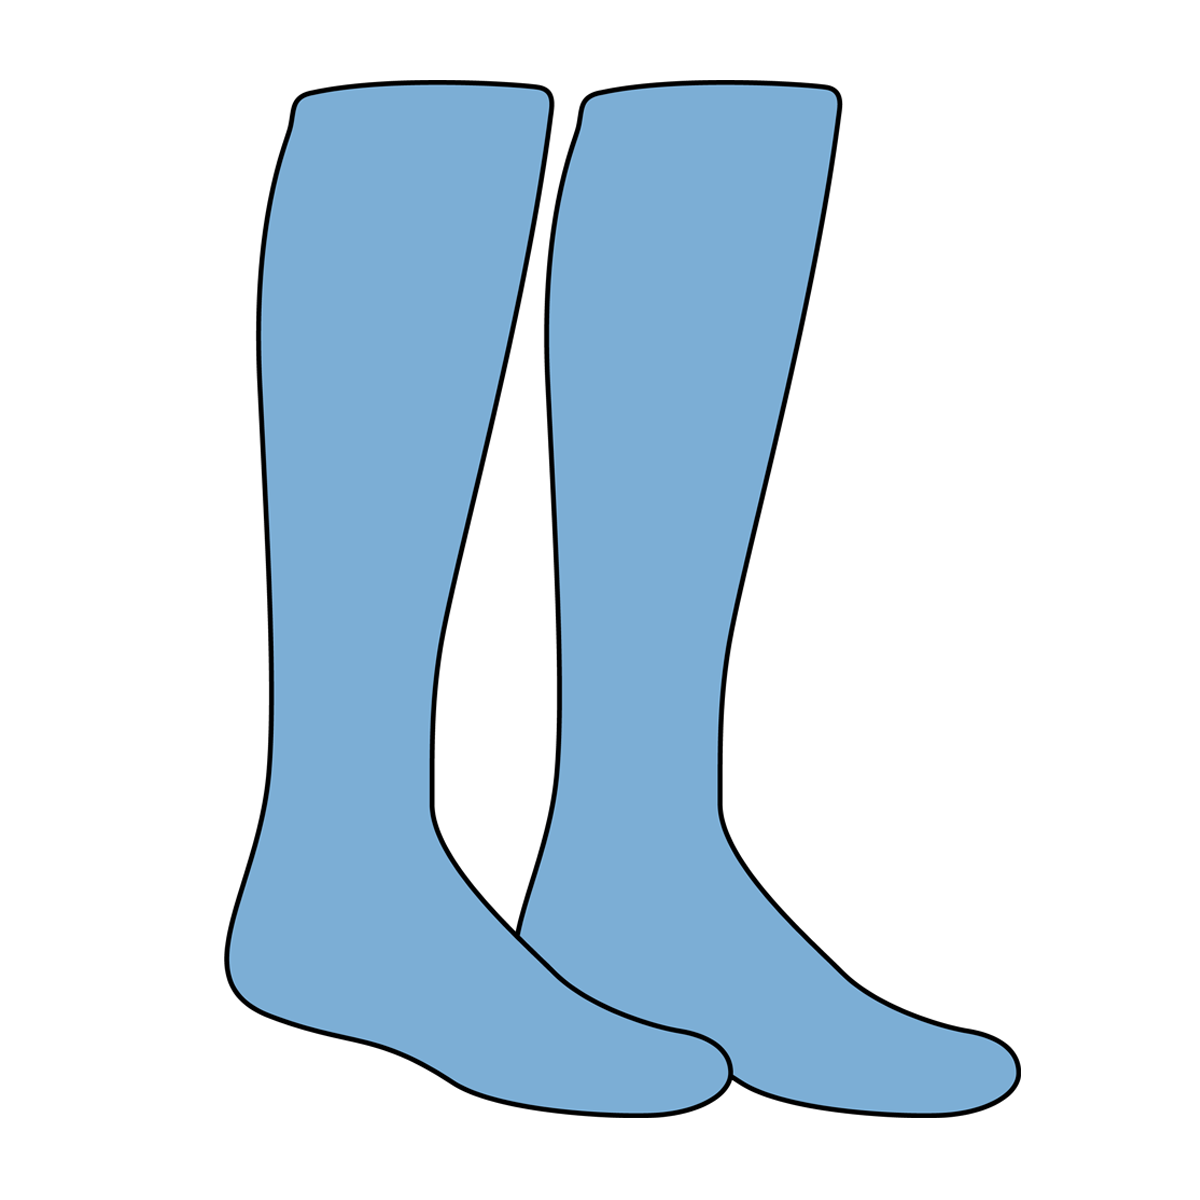 Sock soccer sock